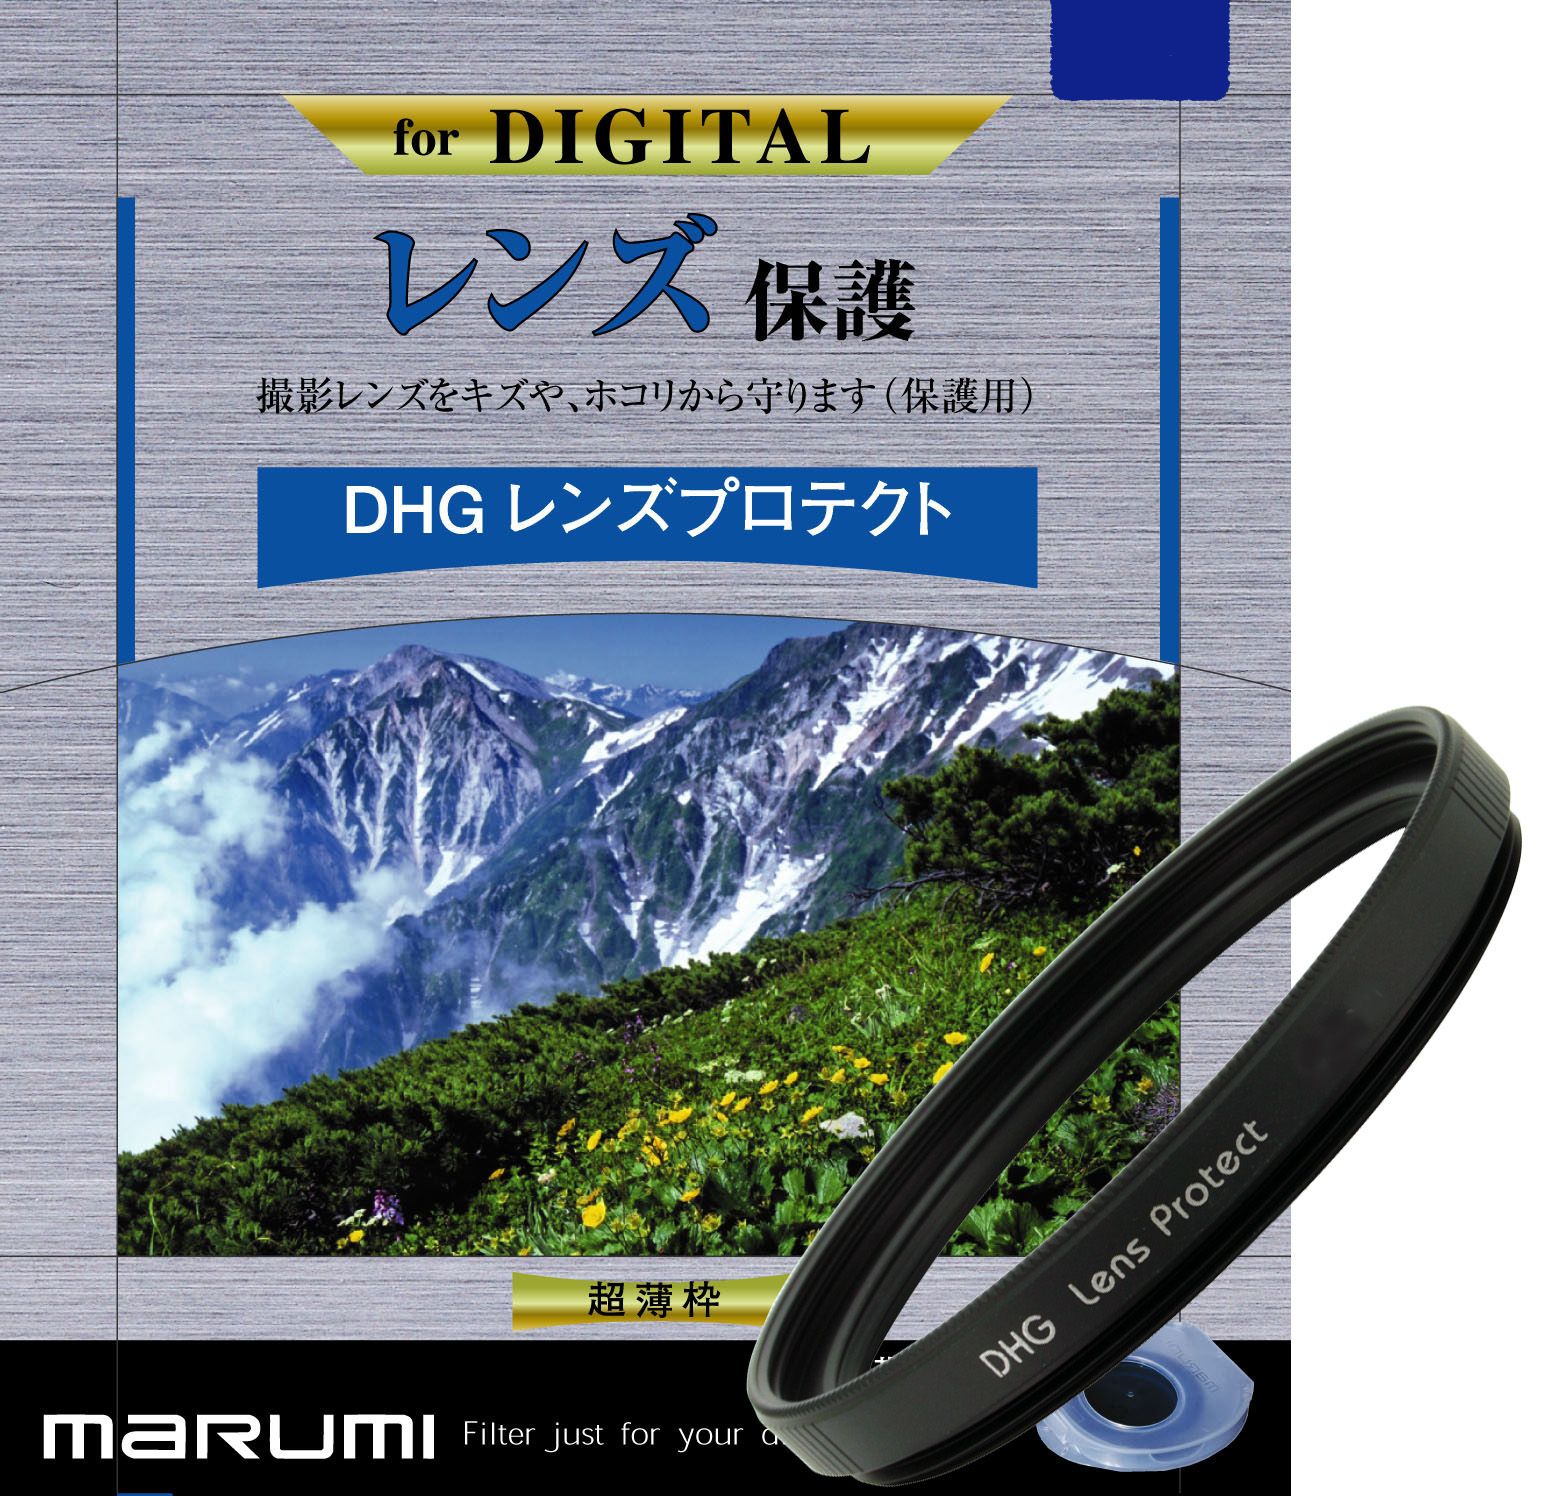 マルミ  DHG レンズプロテクト 52mm [プロテクター] MARUMI